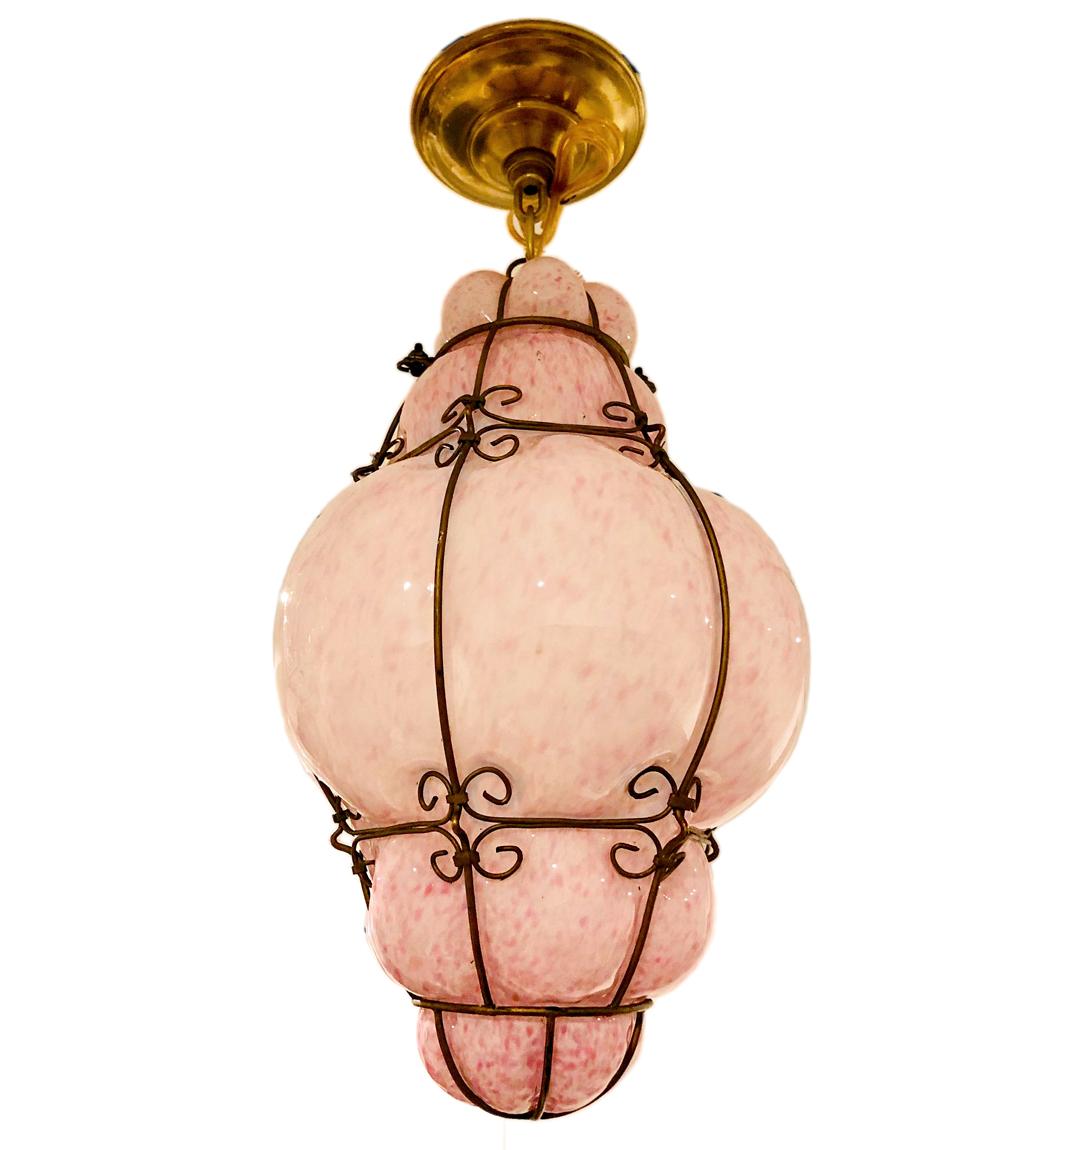 Eine rosafarbene mundgeblasene Murano-Glaslaterne aus den 1930er Jahren mit Eisenrahmen.

Abmessungen:
Fallhöhe: 16